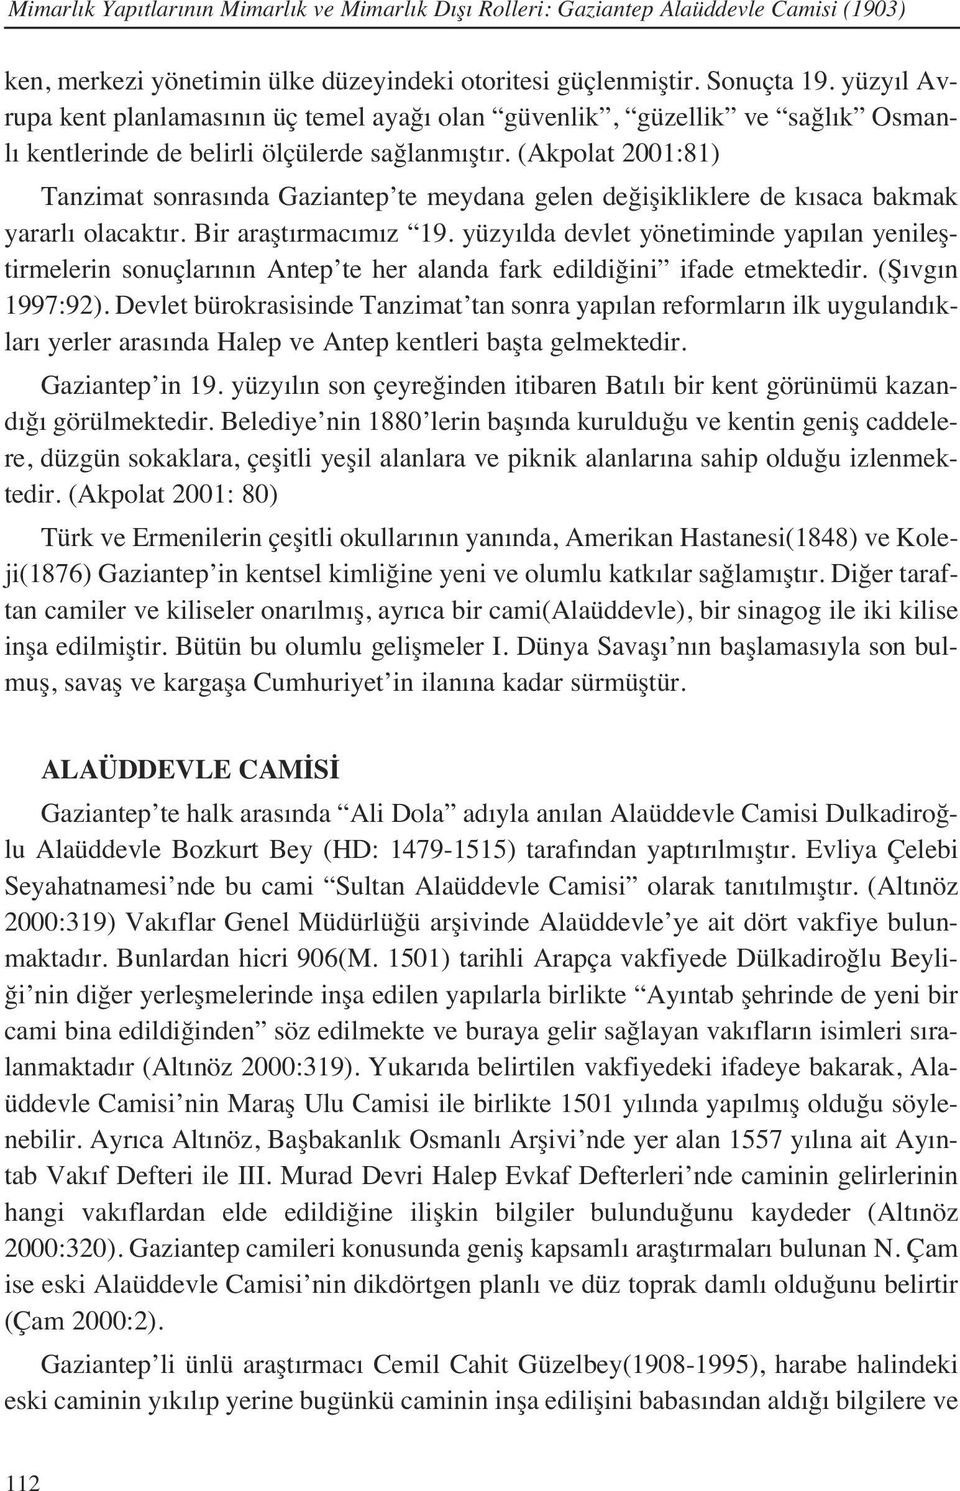 (Akpolat 2001:81) Tanzimat sonras nda Gaziantep te meydana gelen değişikliklere de k saca bakmak yararl olacakt r. Bir araşt rmac m z 19.